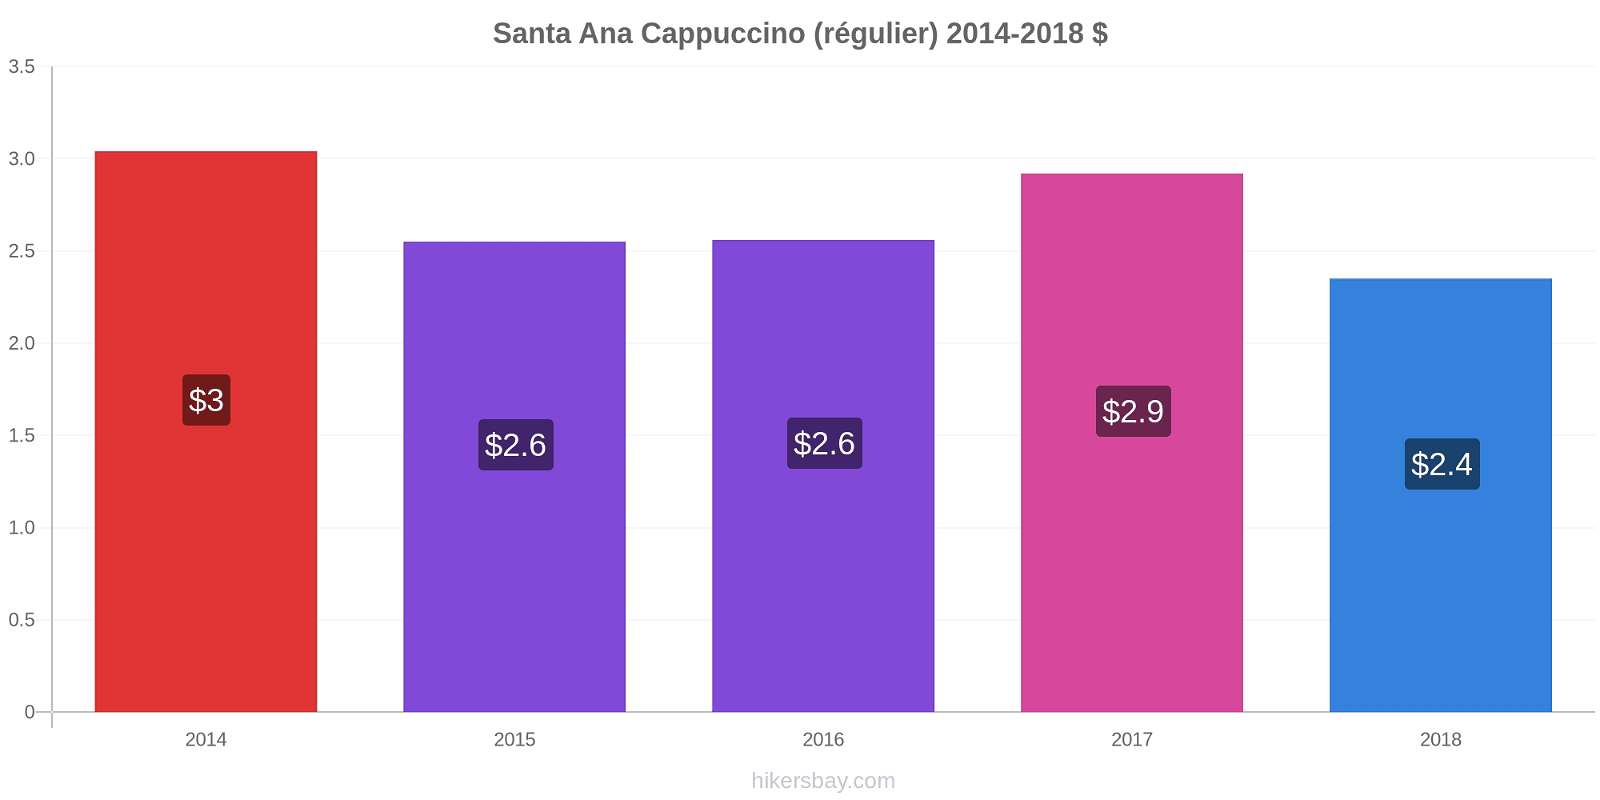 Santa Ana changements de prix Cappuccino (régulier) hikersbay.com